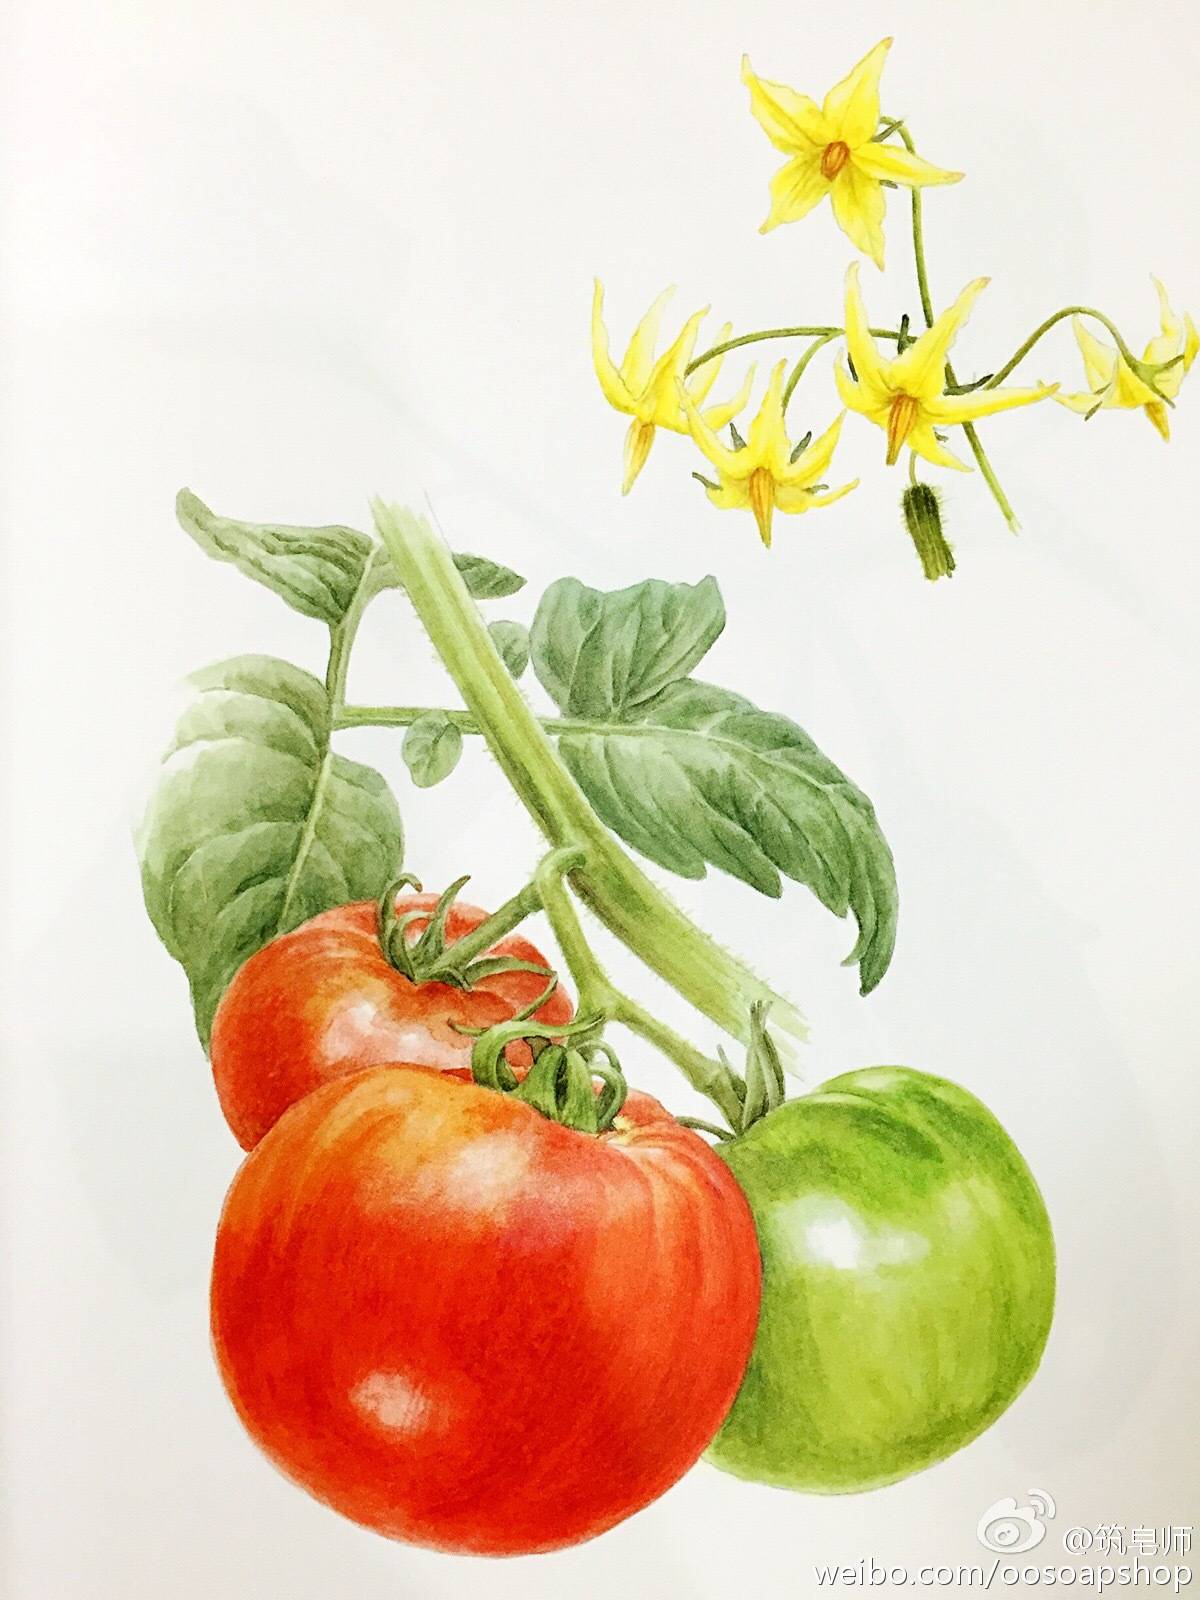 蔬果绘 茄子彩铅手绘 来自微博 @筑皂师